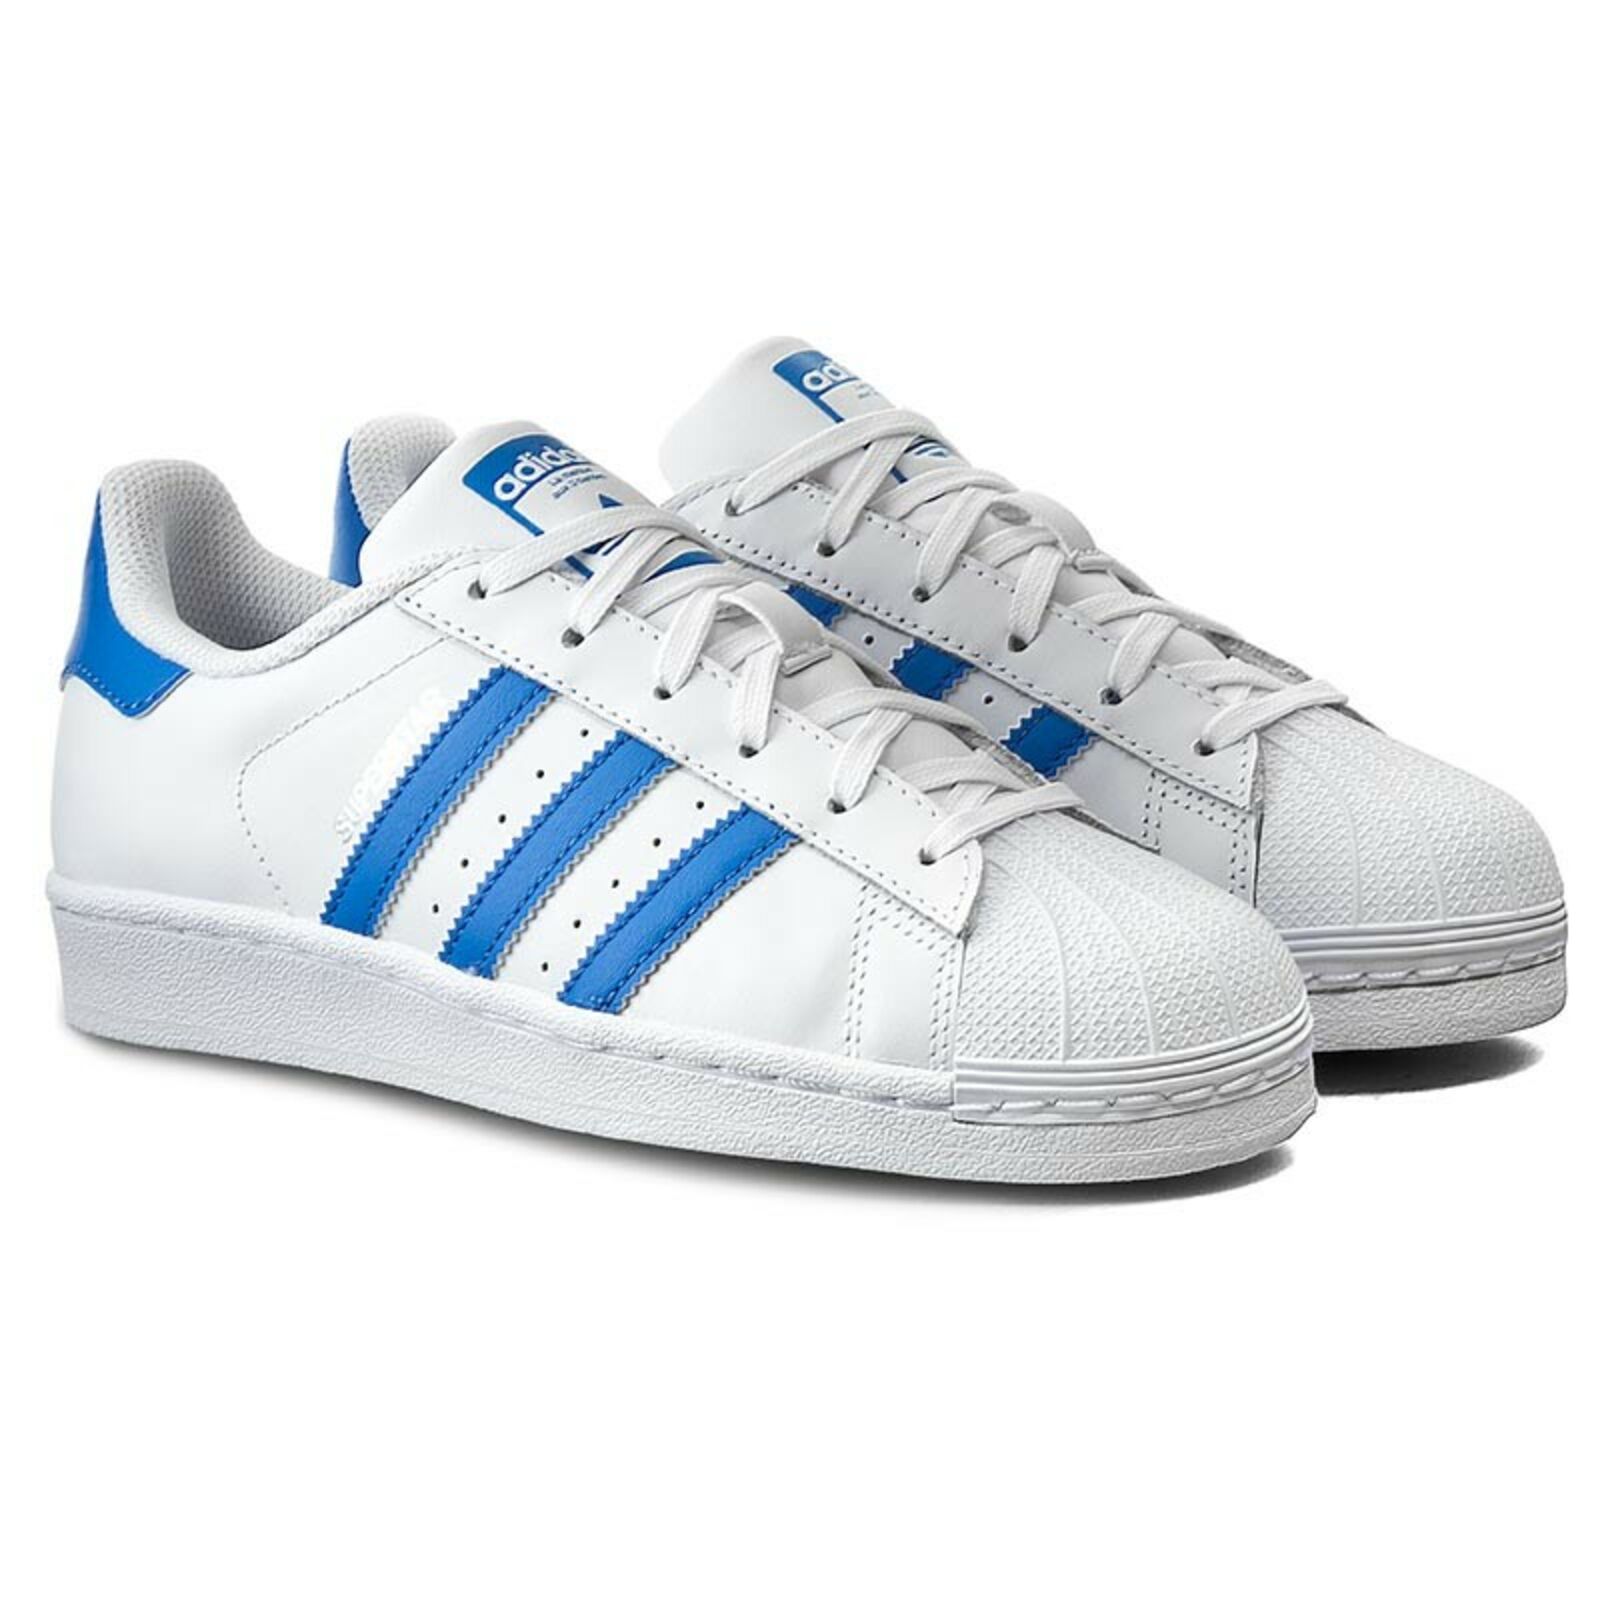 gradualmente Primitivo medio Adidas Originals Superstar női utcai cipő / fehér kék, s75929, szép kártya,  | CipőPakk.hu Nike, Jordan, Adidas és egyéb márkák